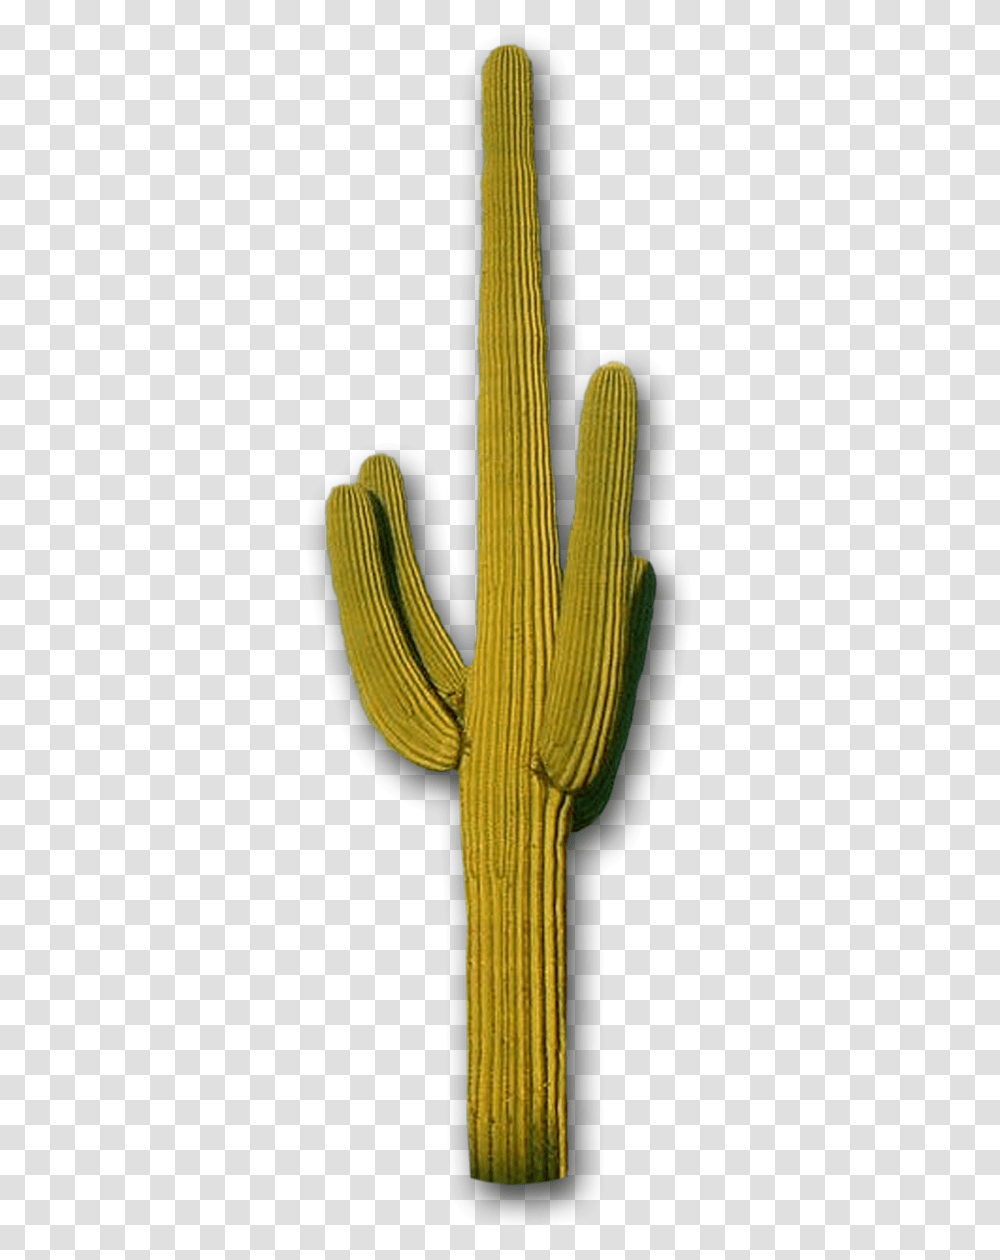 Cactus Mountains The Distance Steve Lovelace Saguaro Cactus, Plant, Sword, Blade, Weapon Transparent Png